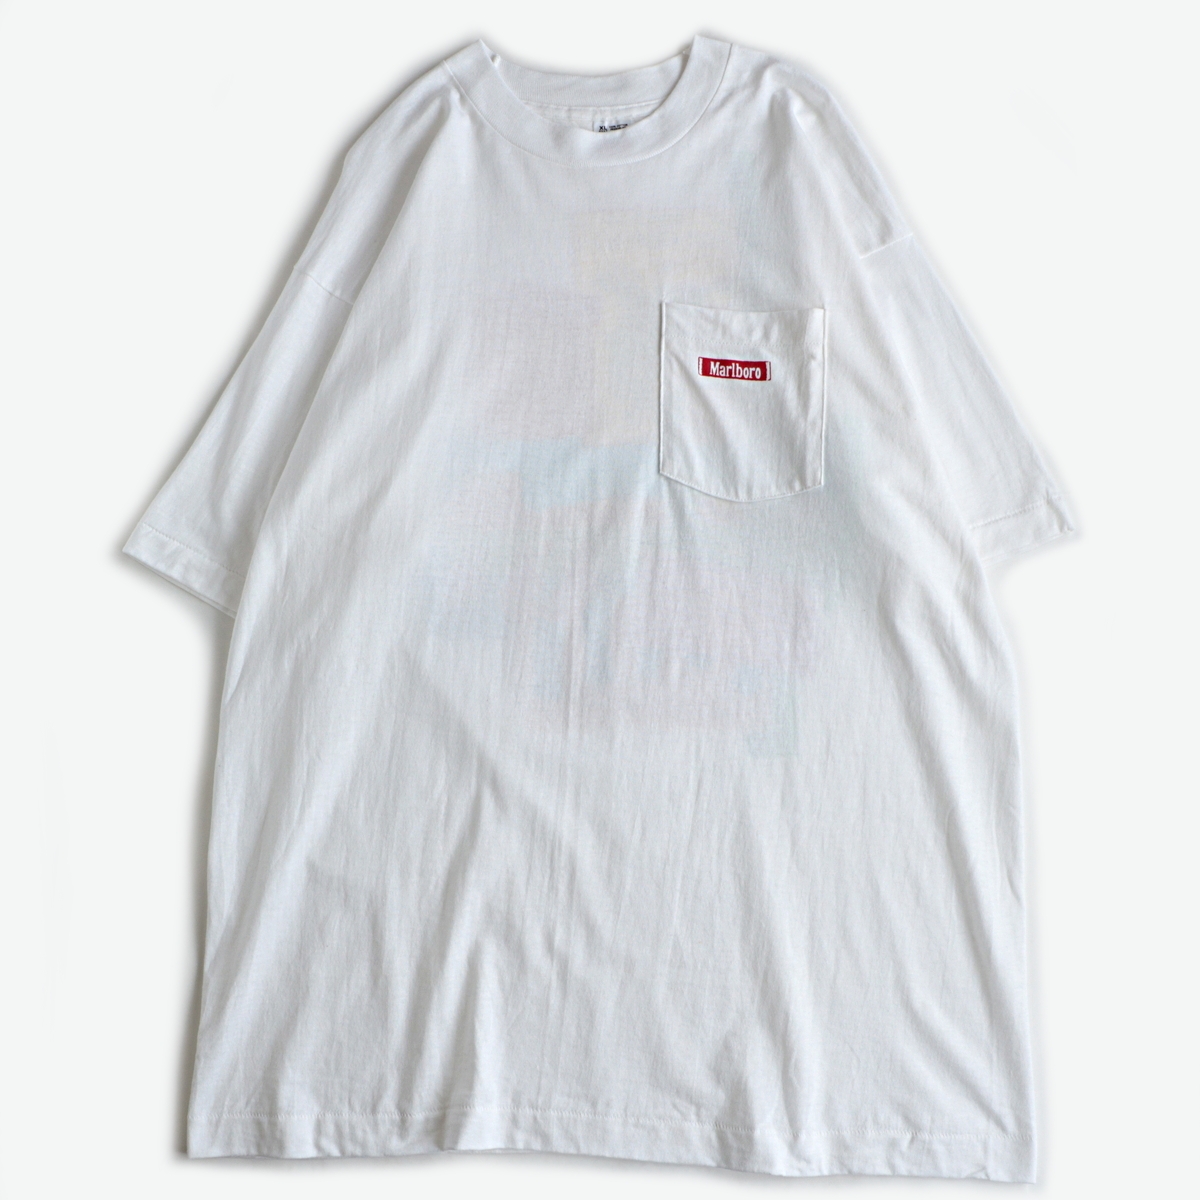 90s マルボロ UNLIMITED リザード ポケット Tシャツ XL トカゲ+spbgp44.ru